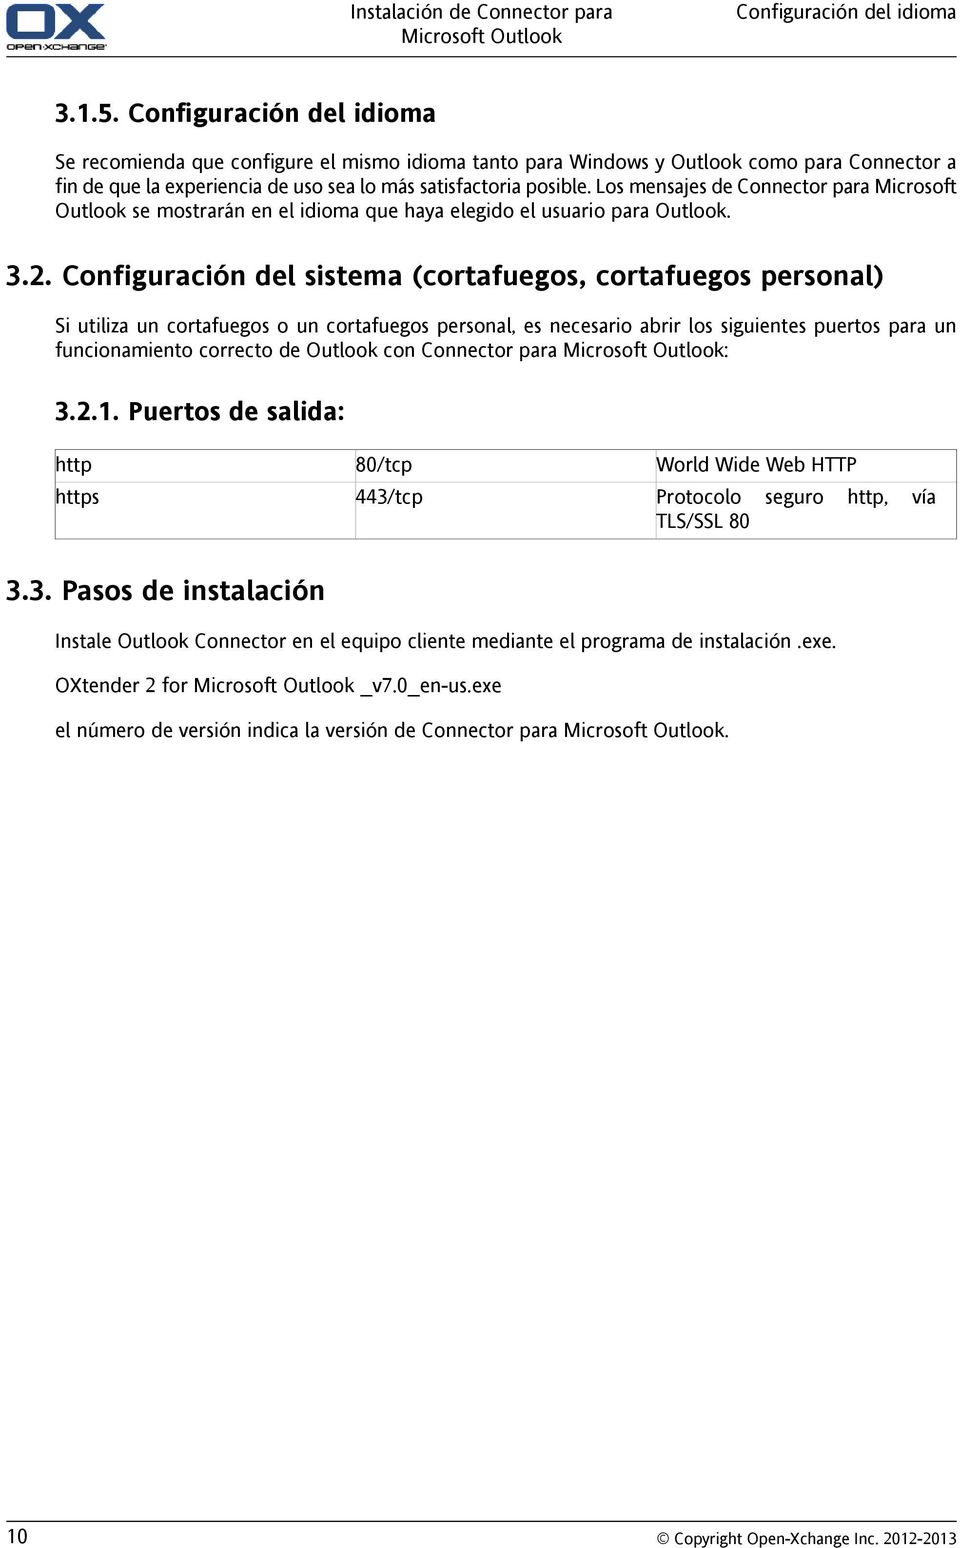 Los mensajes de Connector para Microsoft Outlook se mostrarán en el idioma que haya elegido el usuario para Outlook. 3.2.